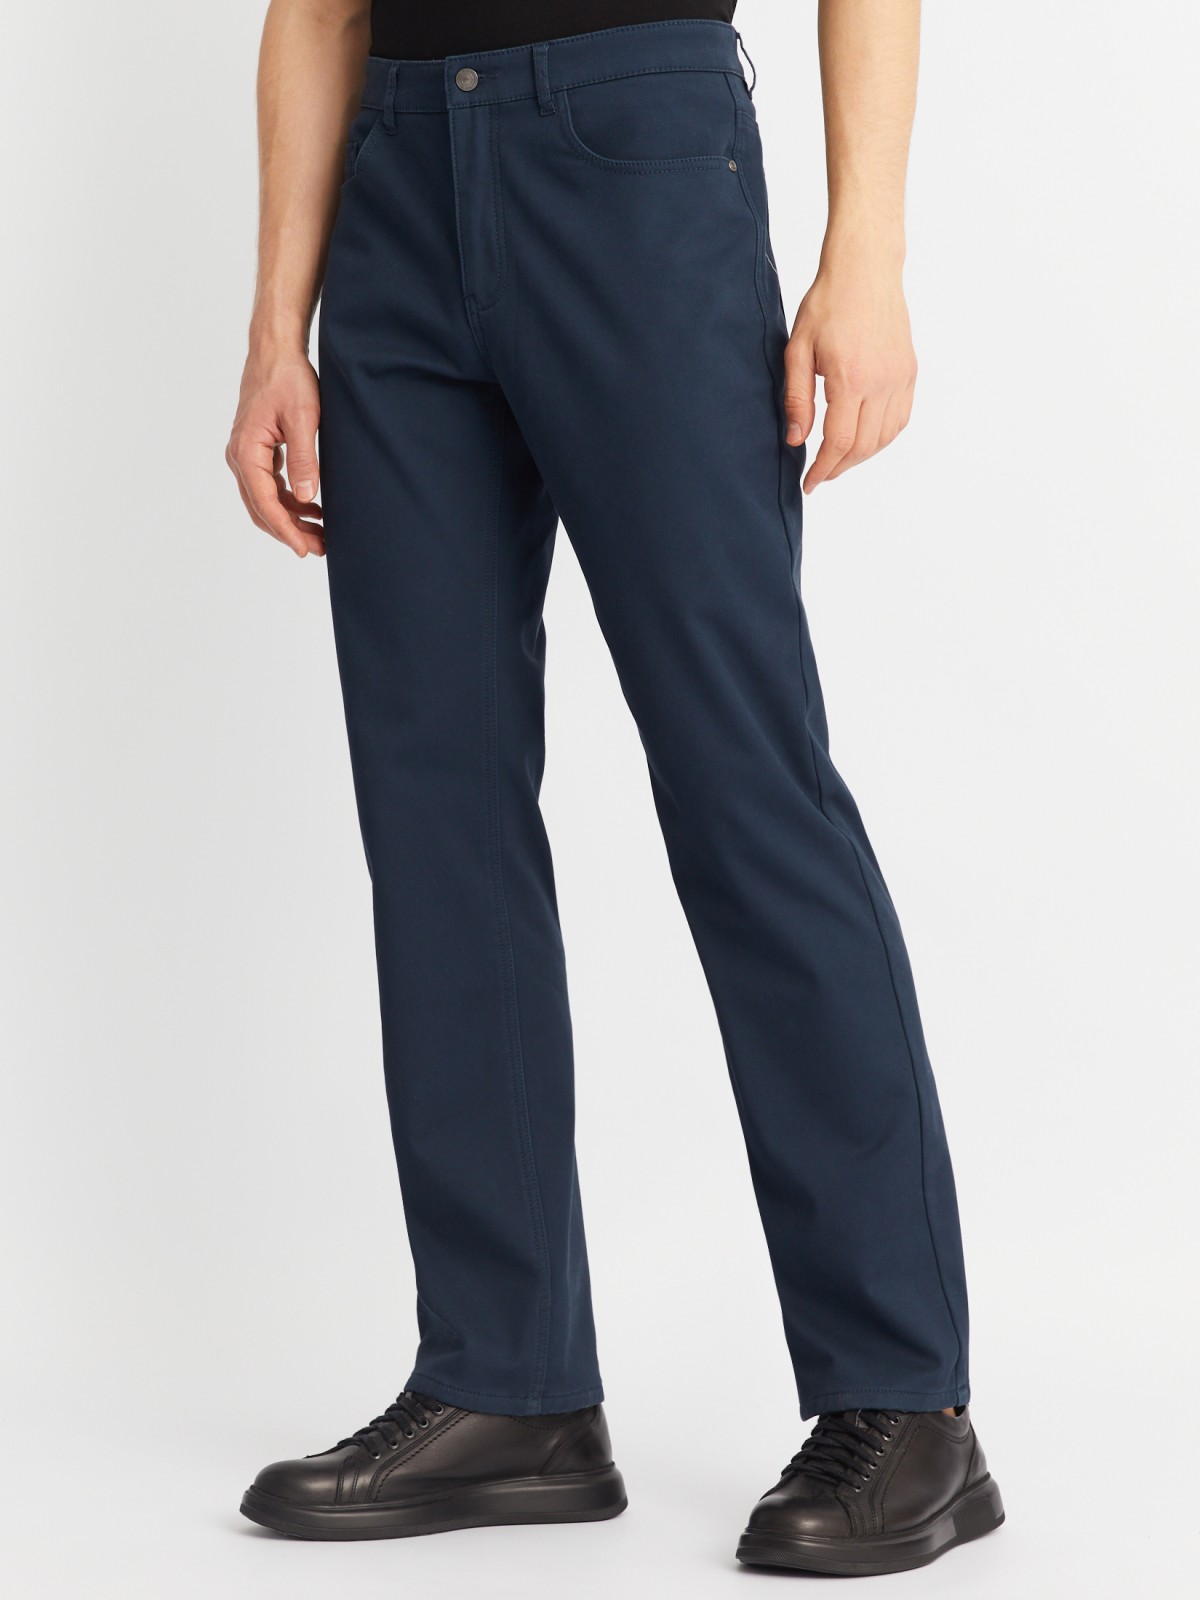 Утеплённые прямые брюки из хлопка с подкладкой из флиса zolla 01243730L013, цвет голубой, размер 30 - фото 3